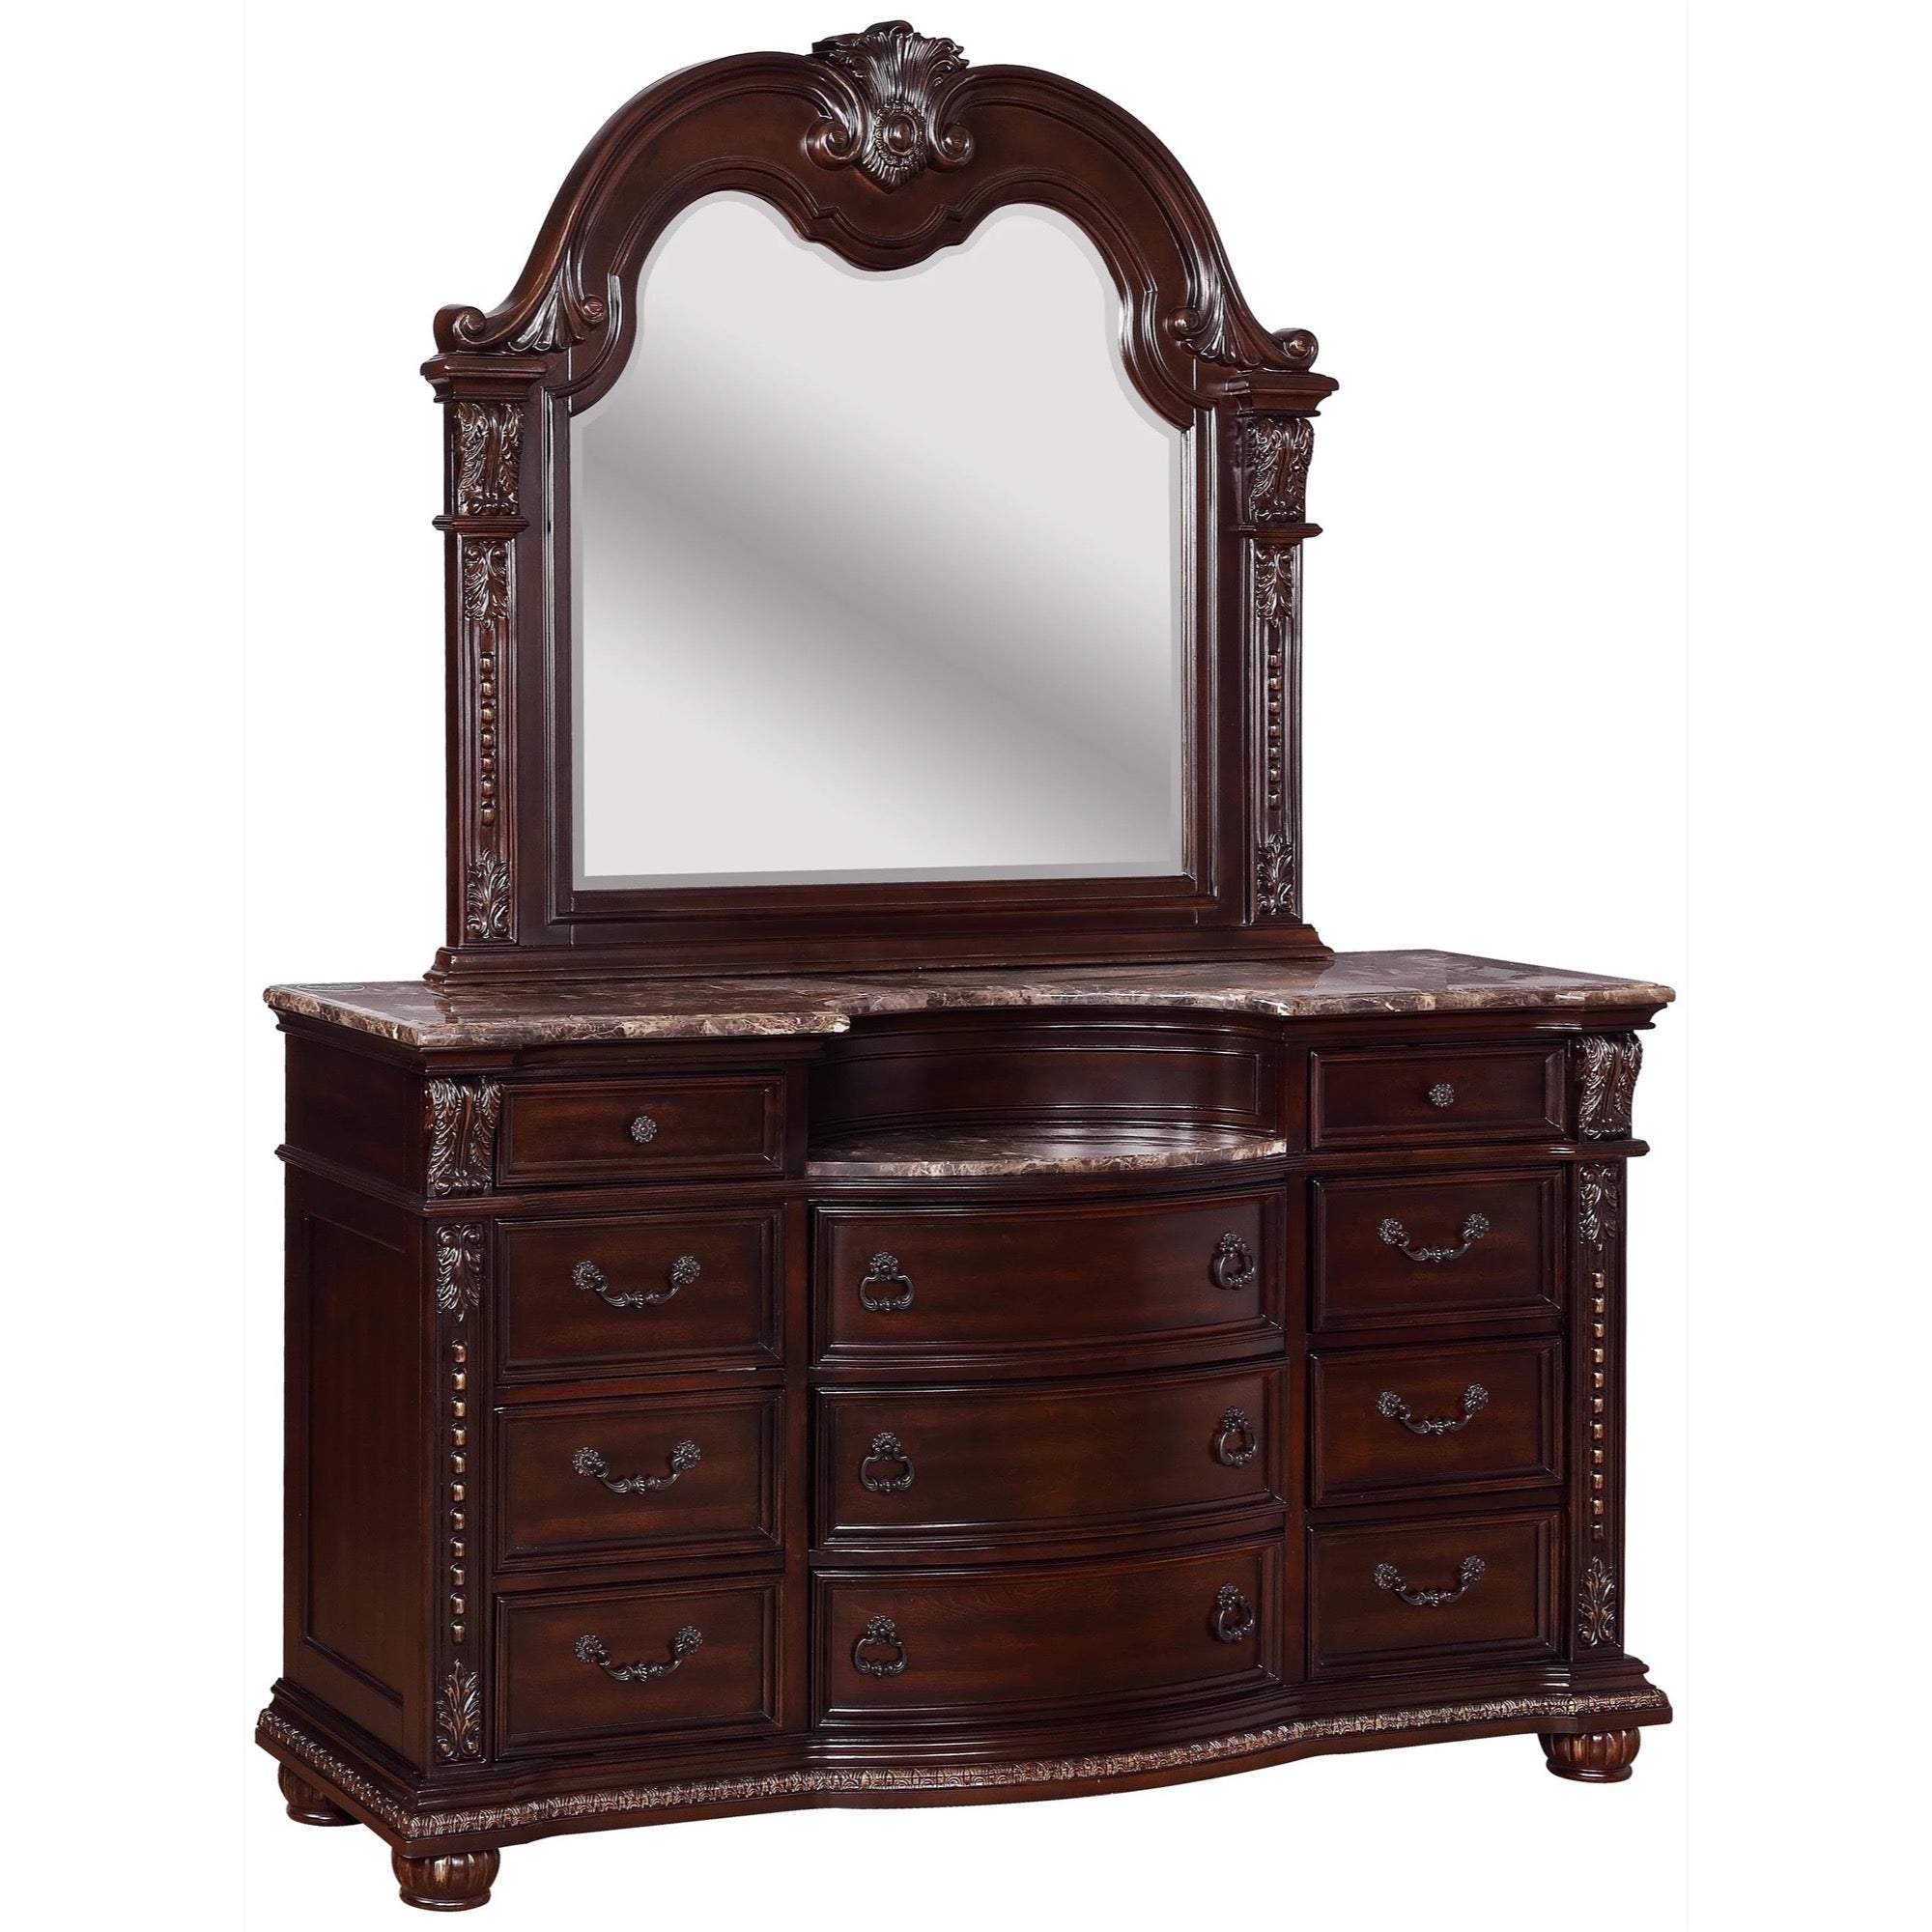 Stanley Dresser & Mirror - Adams Furniture